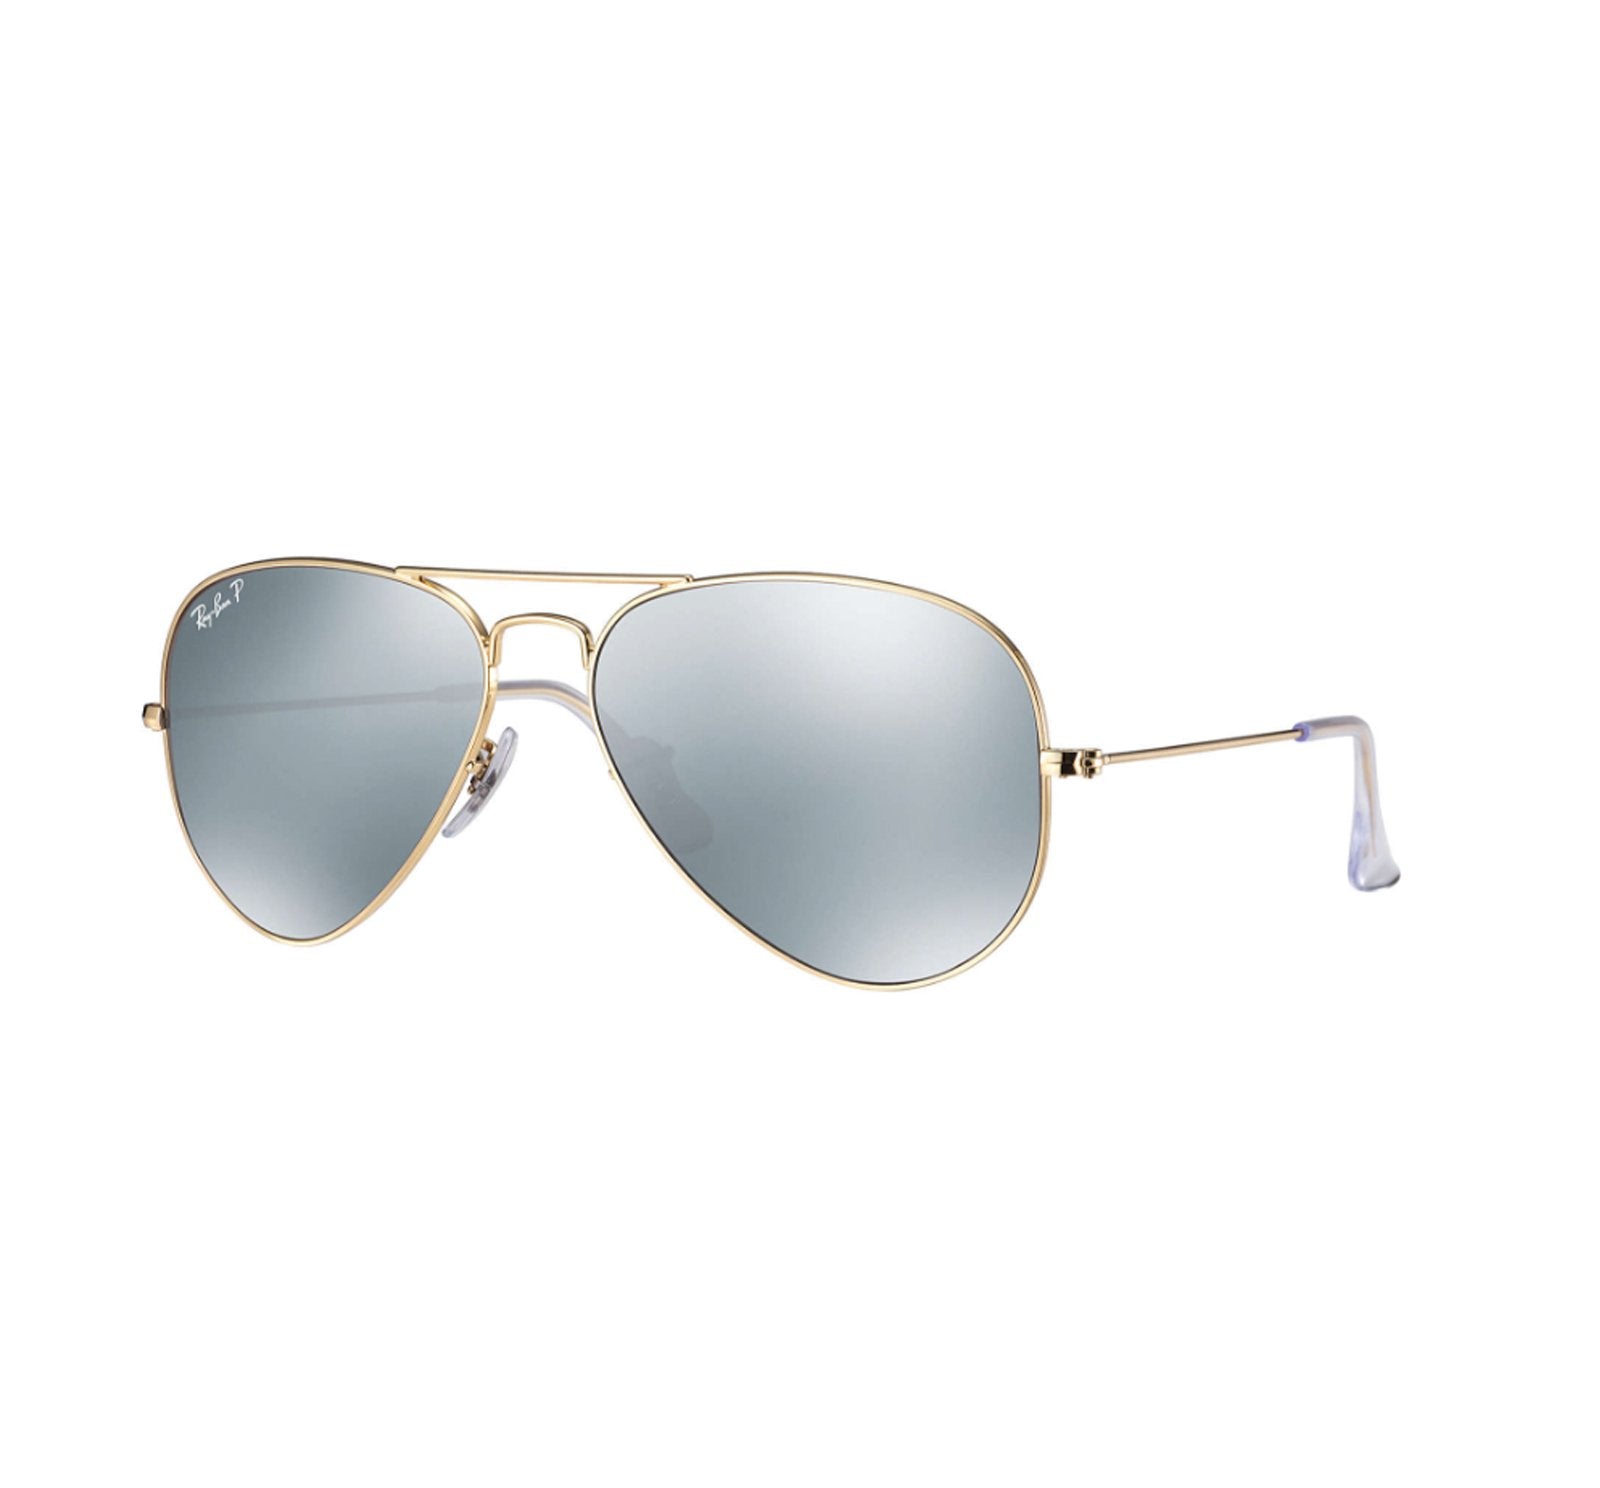 Ray-Ban Aviator Men's Polarized Sunglasses